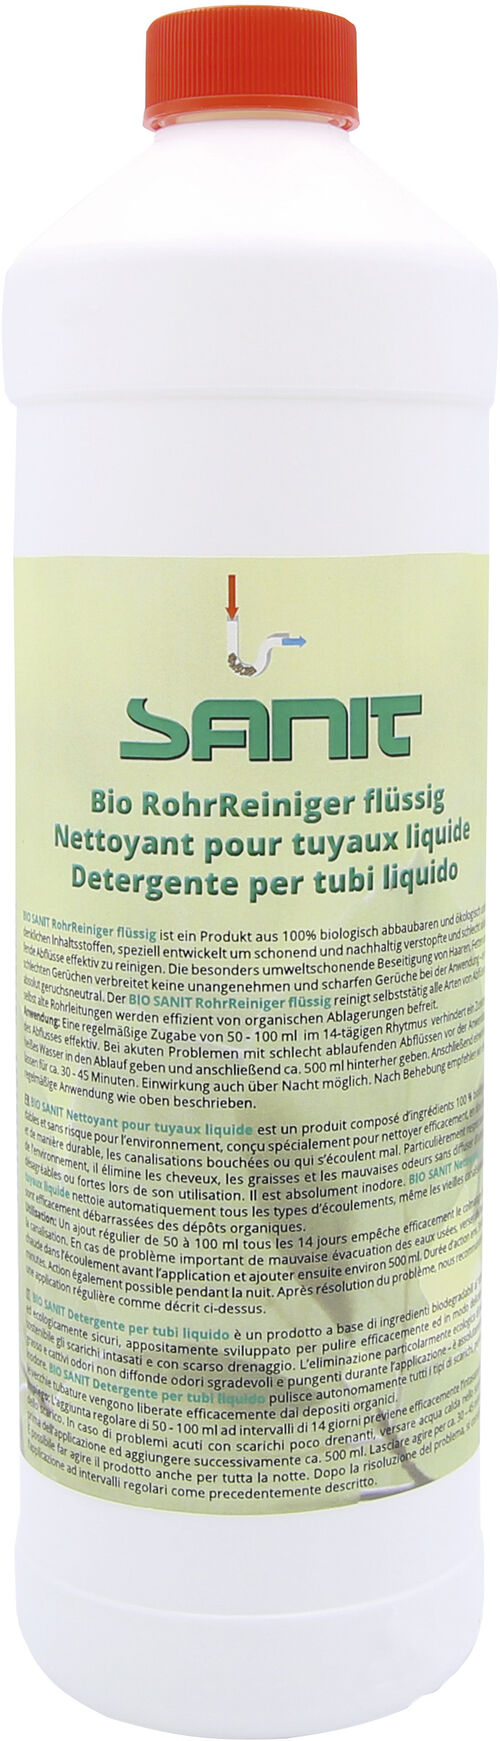 Detergente liquido per tubi Bio Sanit